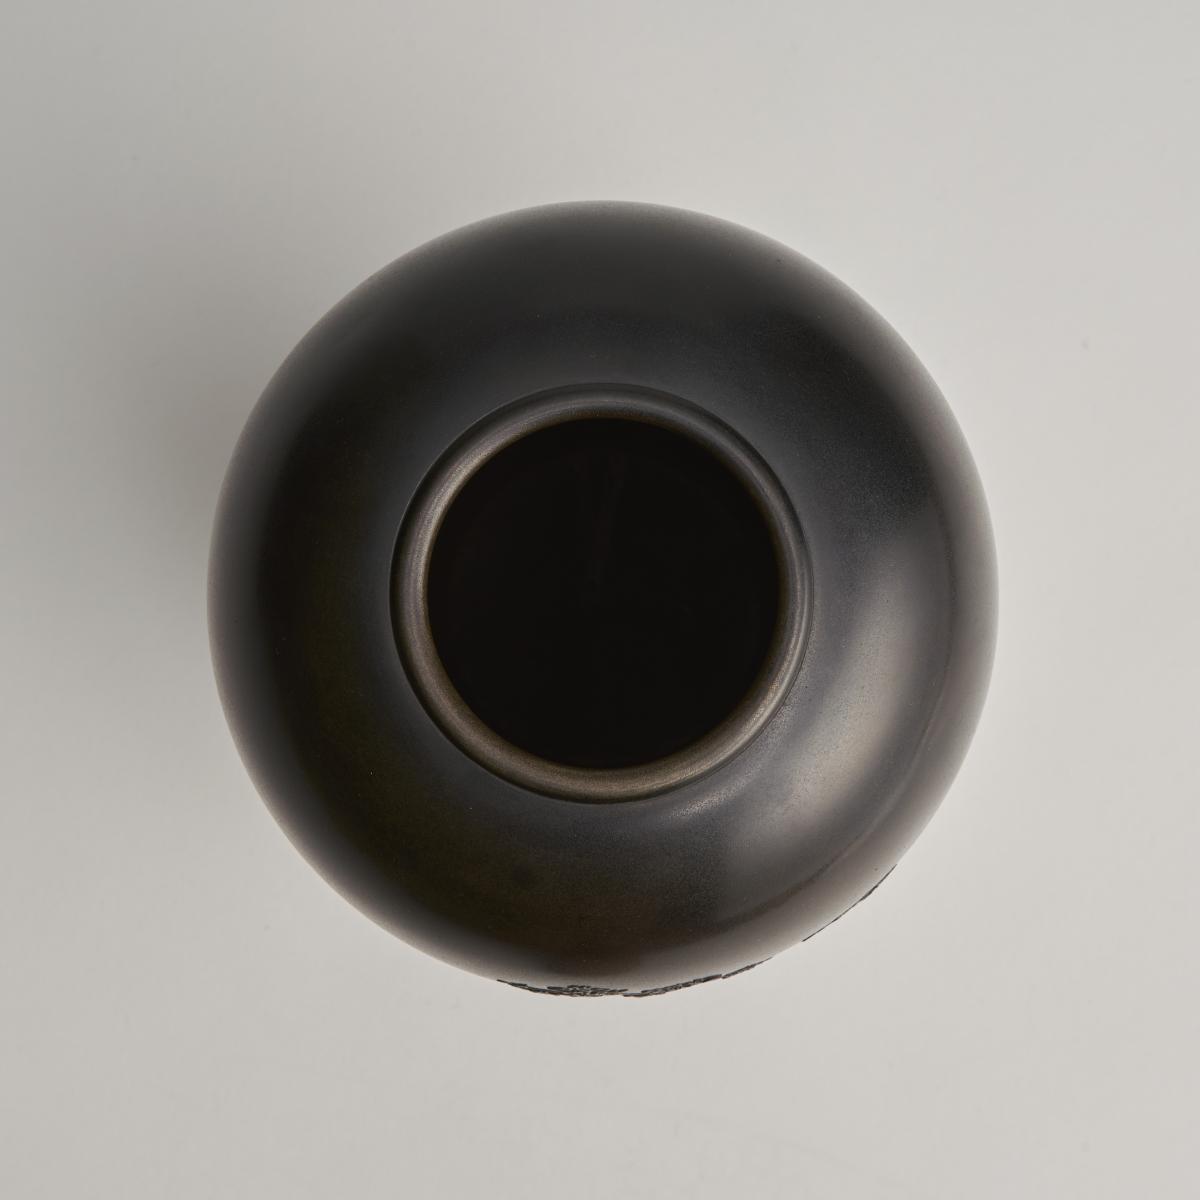 Japanese Meiji Period bronze shakudo vase